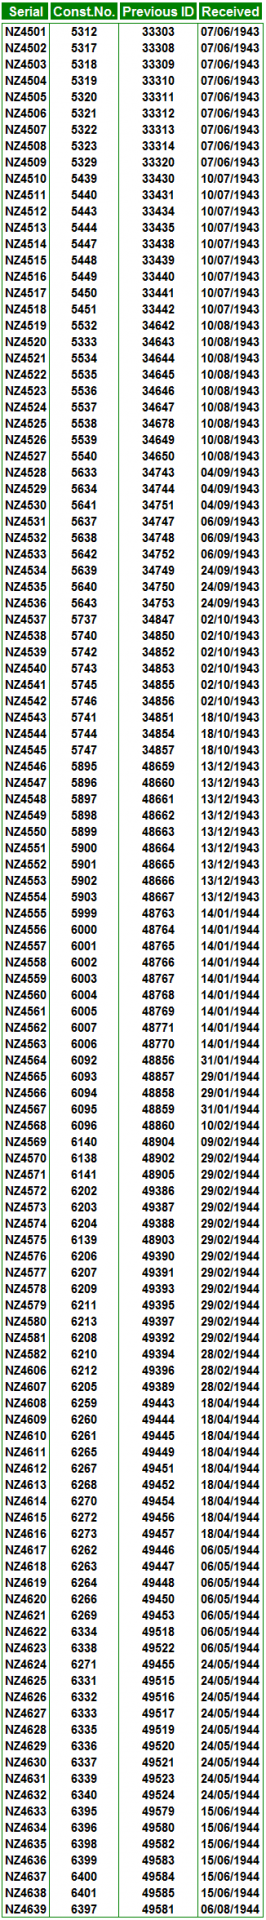 Serial numbers pv 1 venturas rnzaf